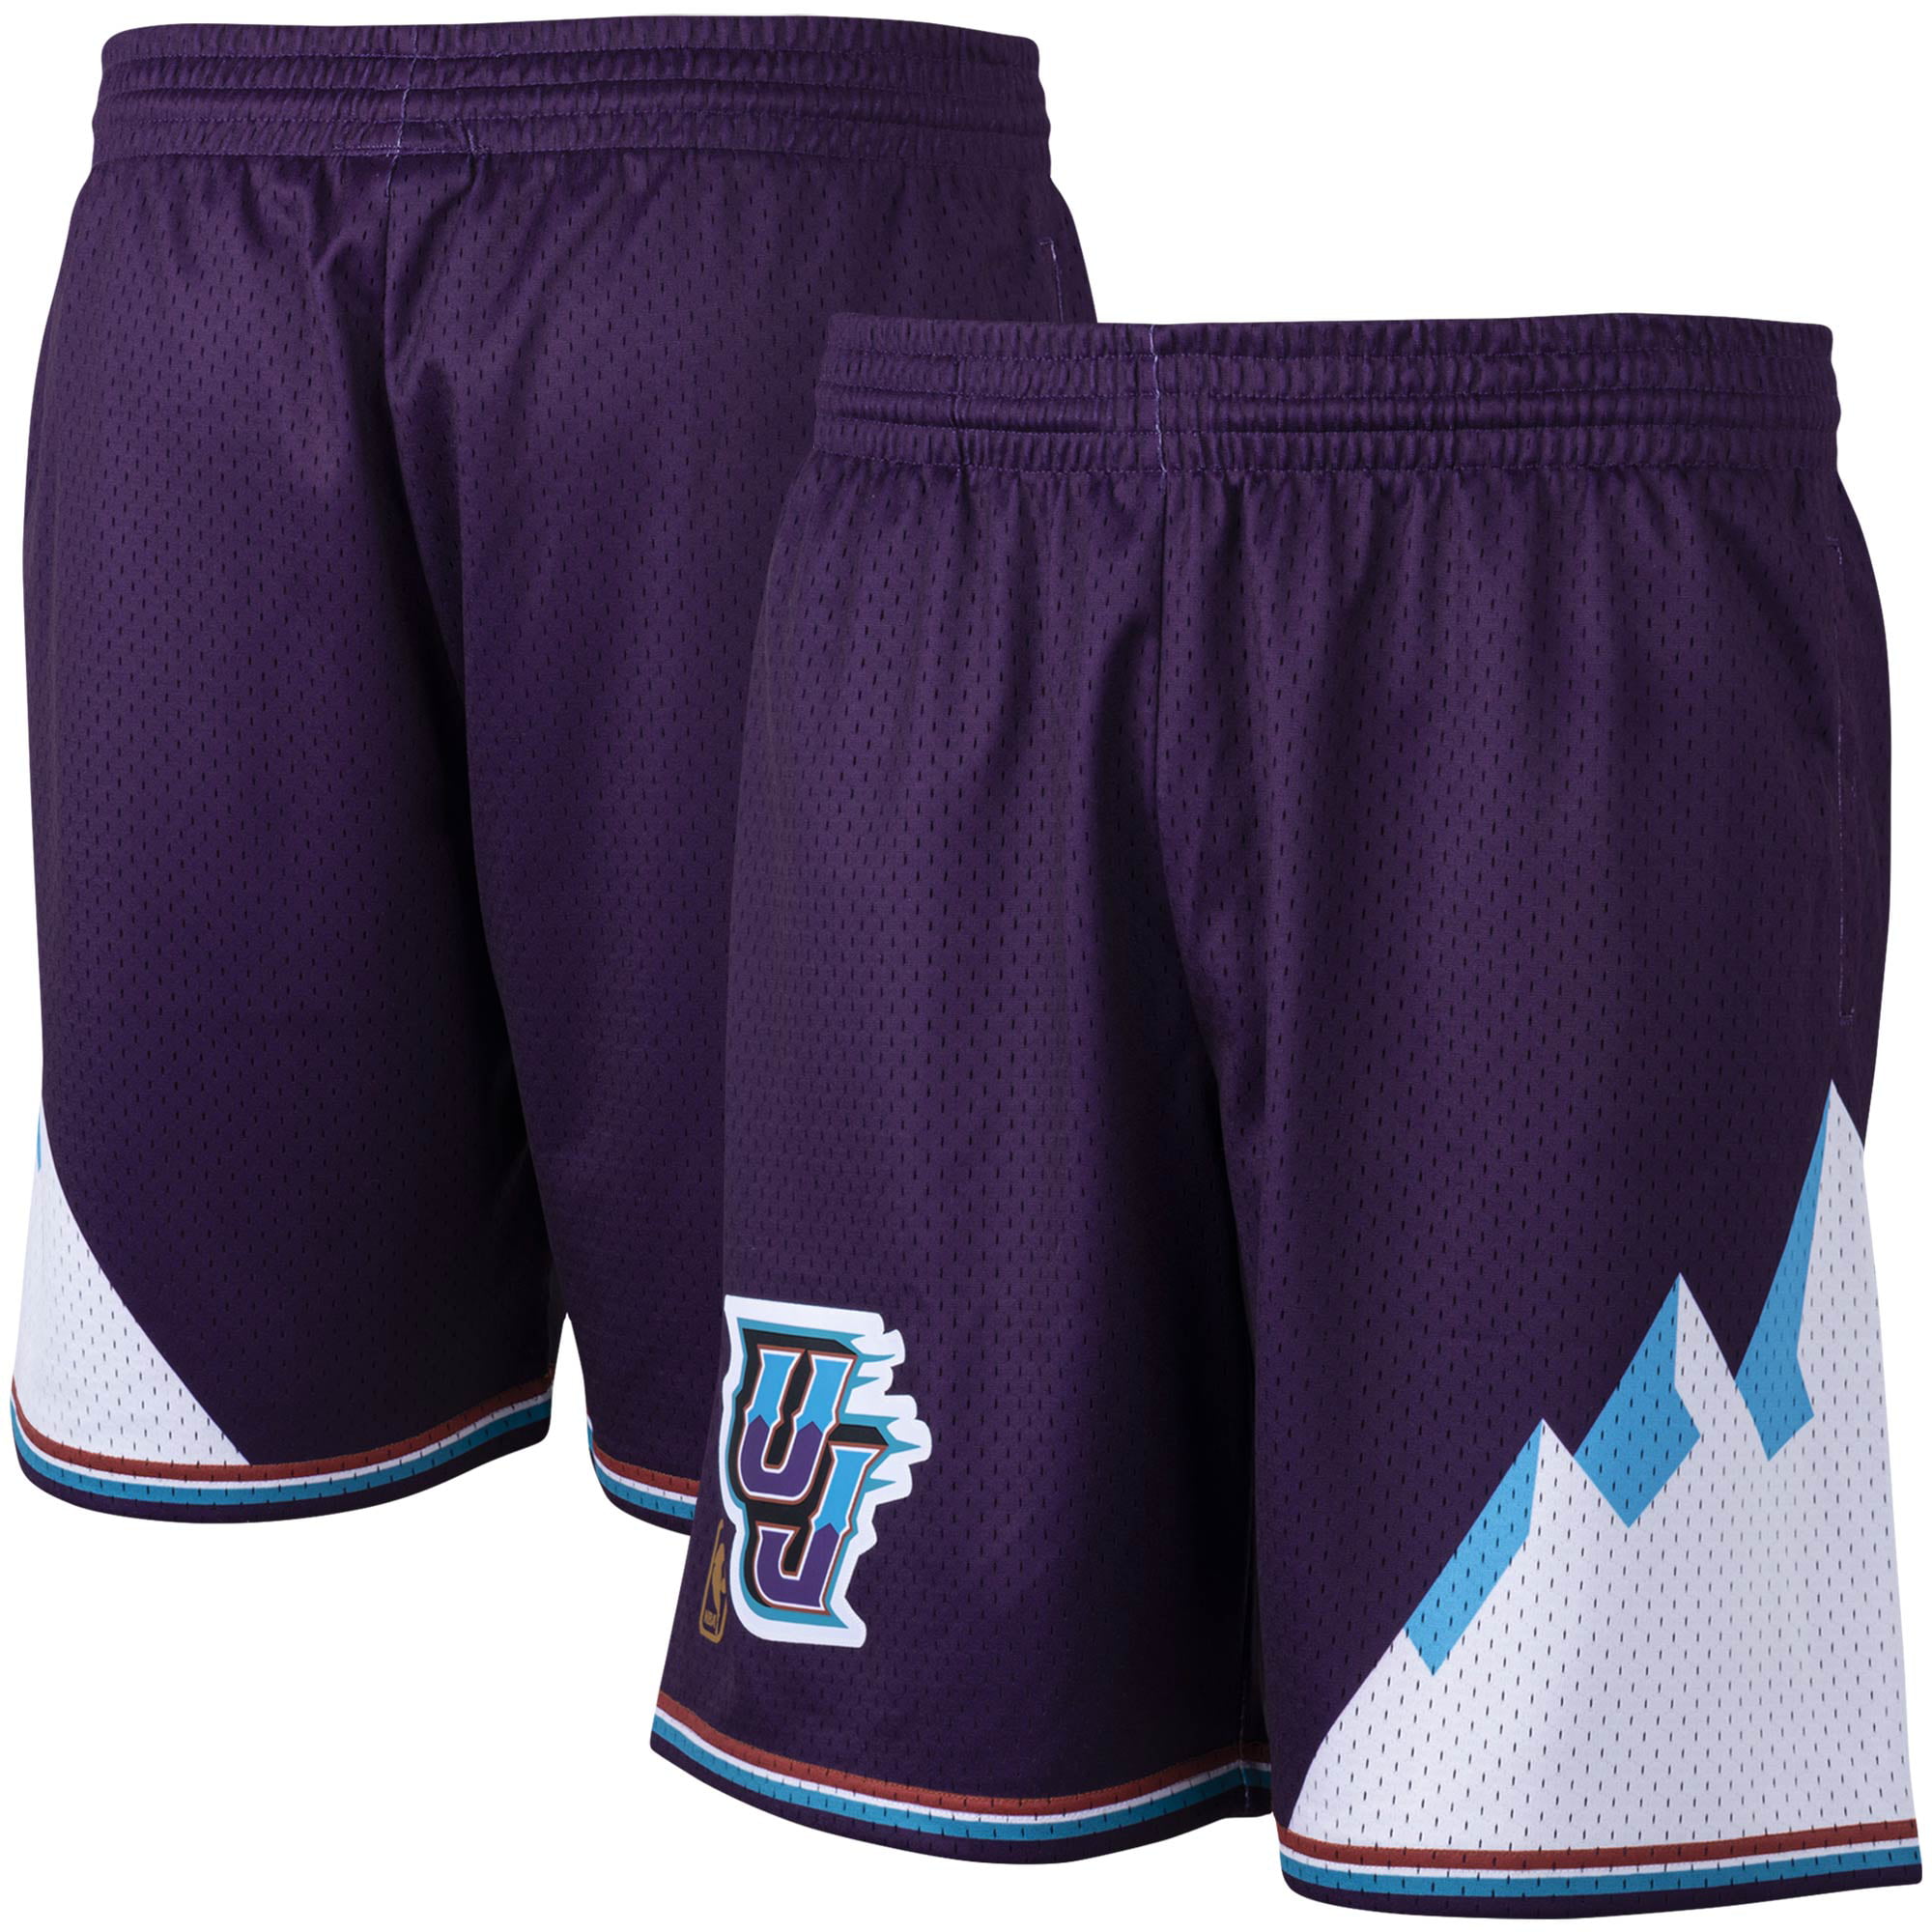 Retro Utah Jazz Basketball Shorts Stitched Purple 